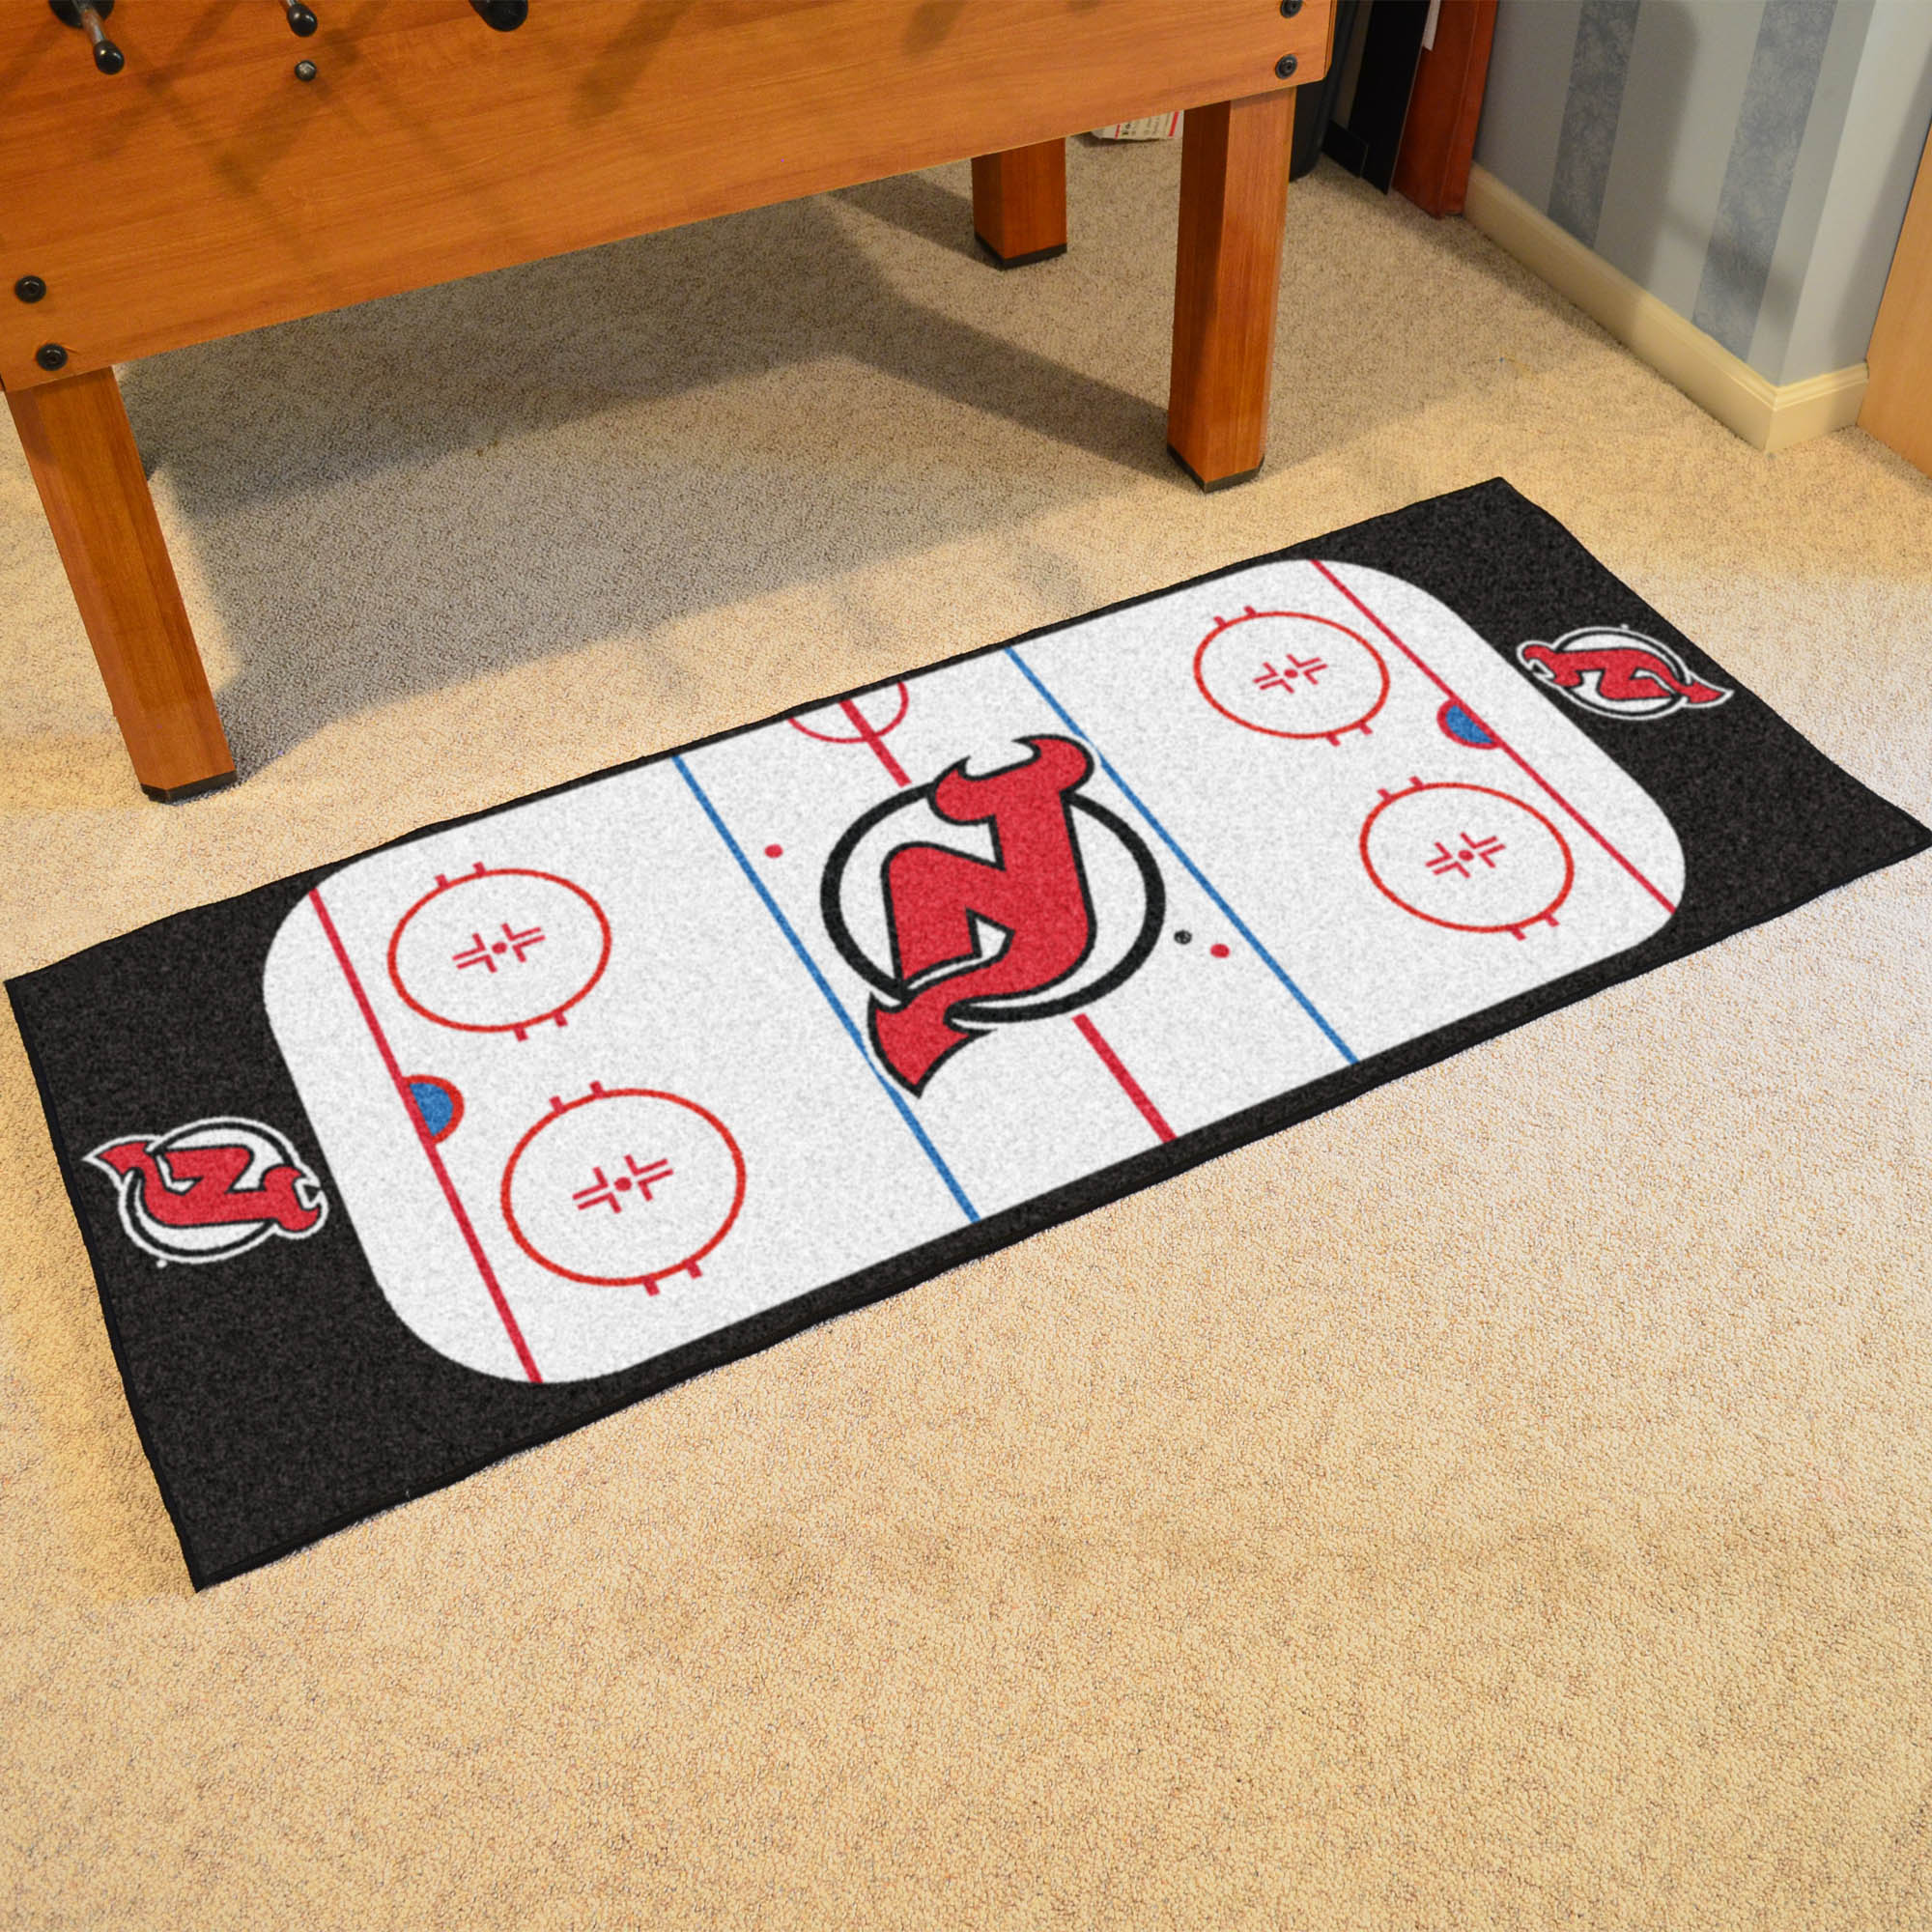 New Jersey Devils 30 x 72 Hockey Rink Carpet Runner